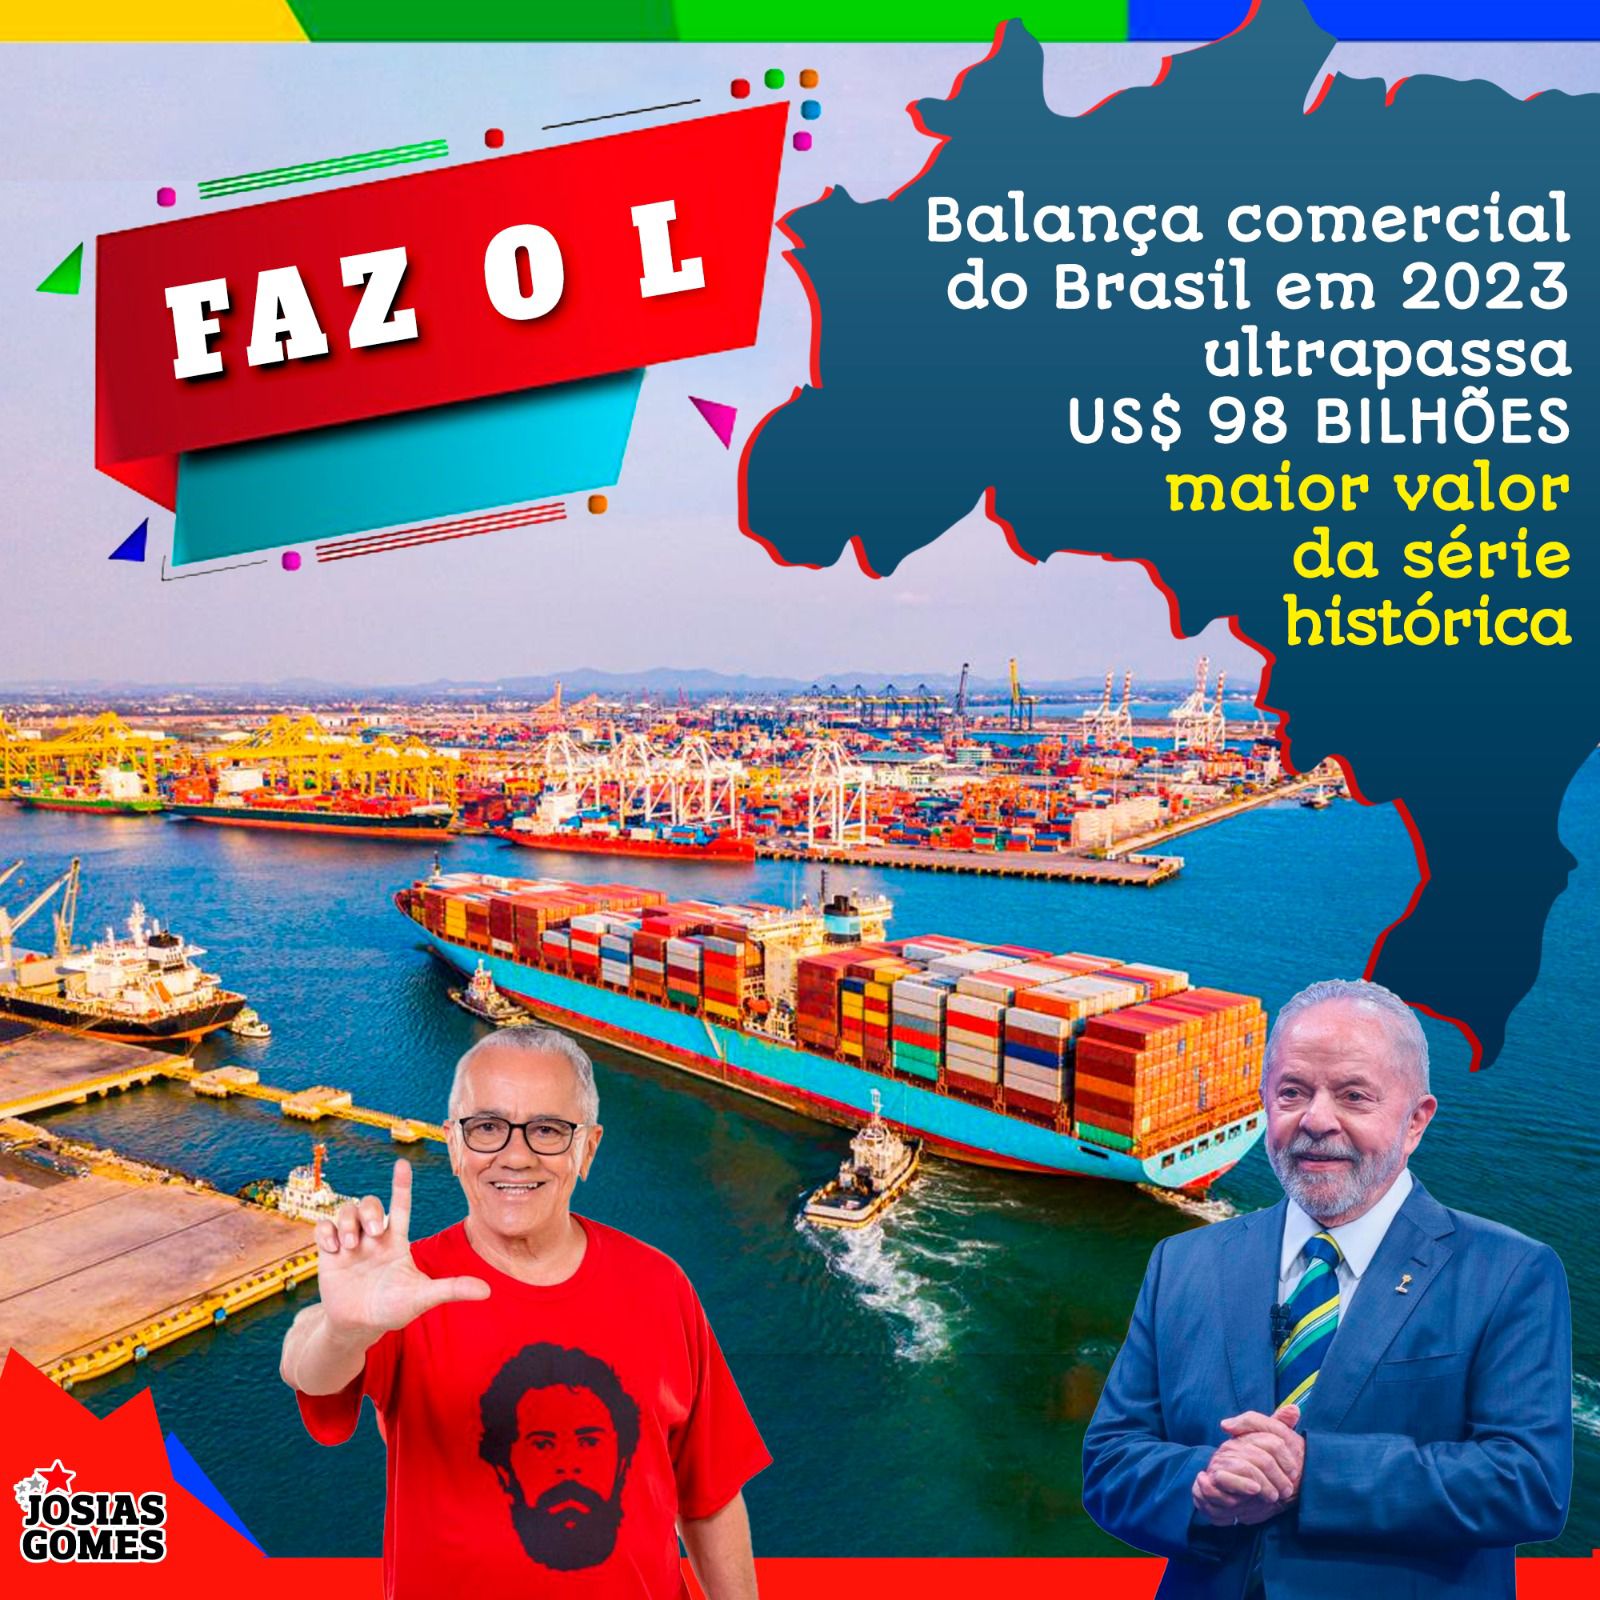 Balança Comercial Do Brasil Bate Recorde Histórico E Ultrapassa US$ 98 Bilhões